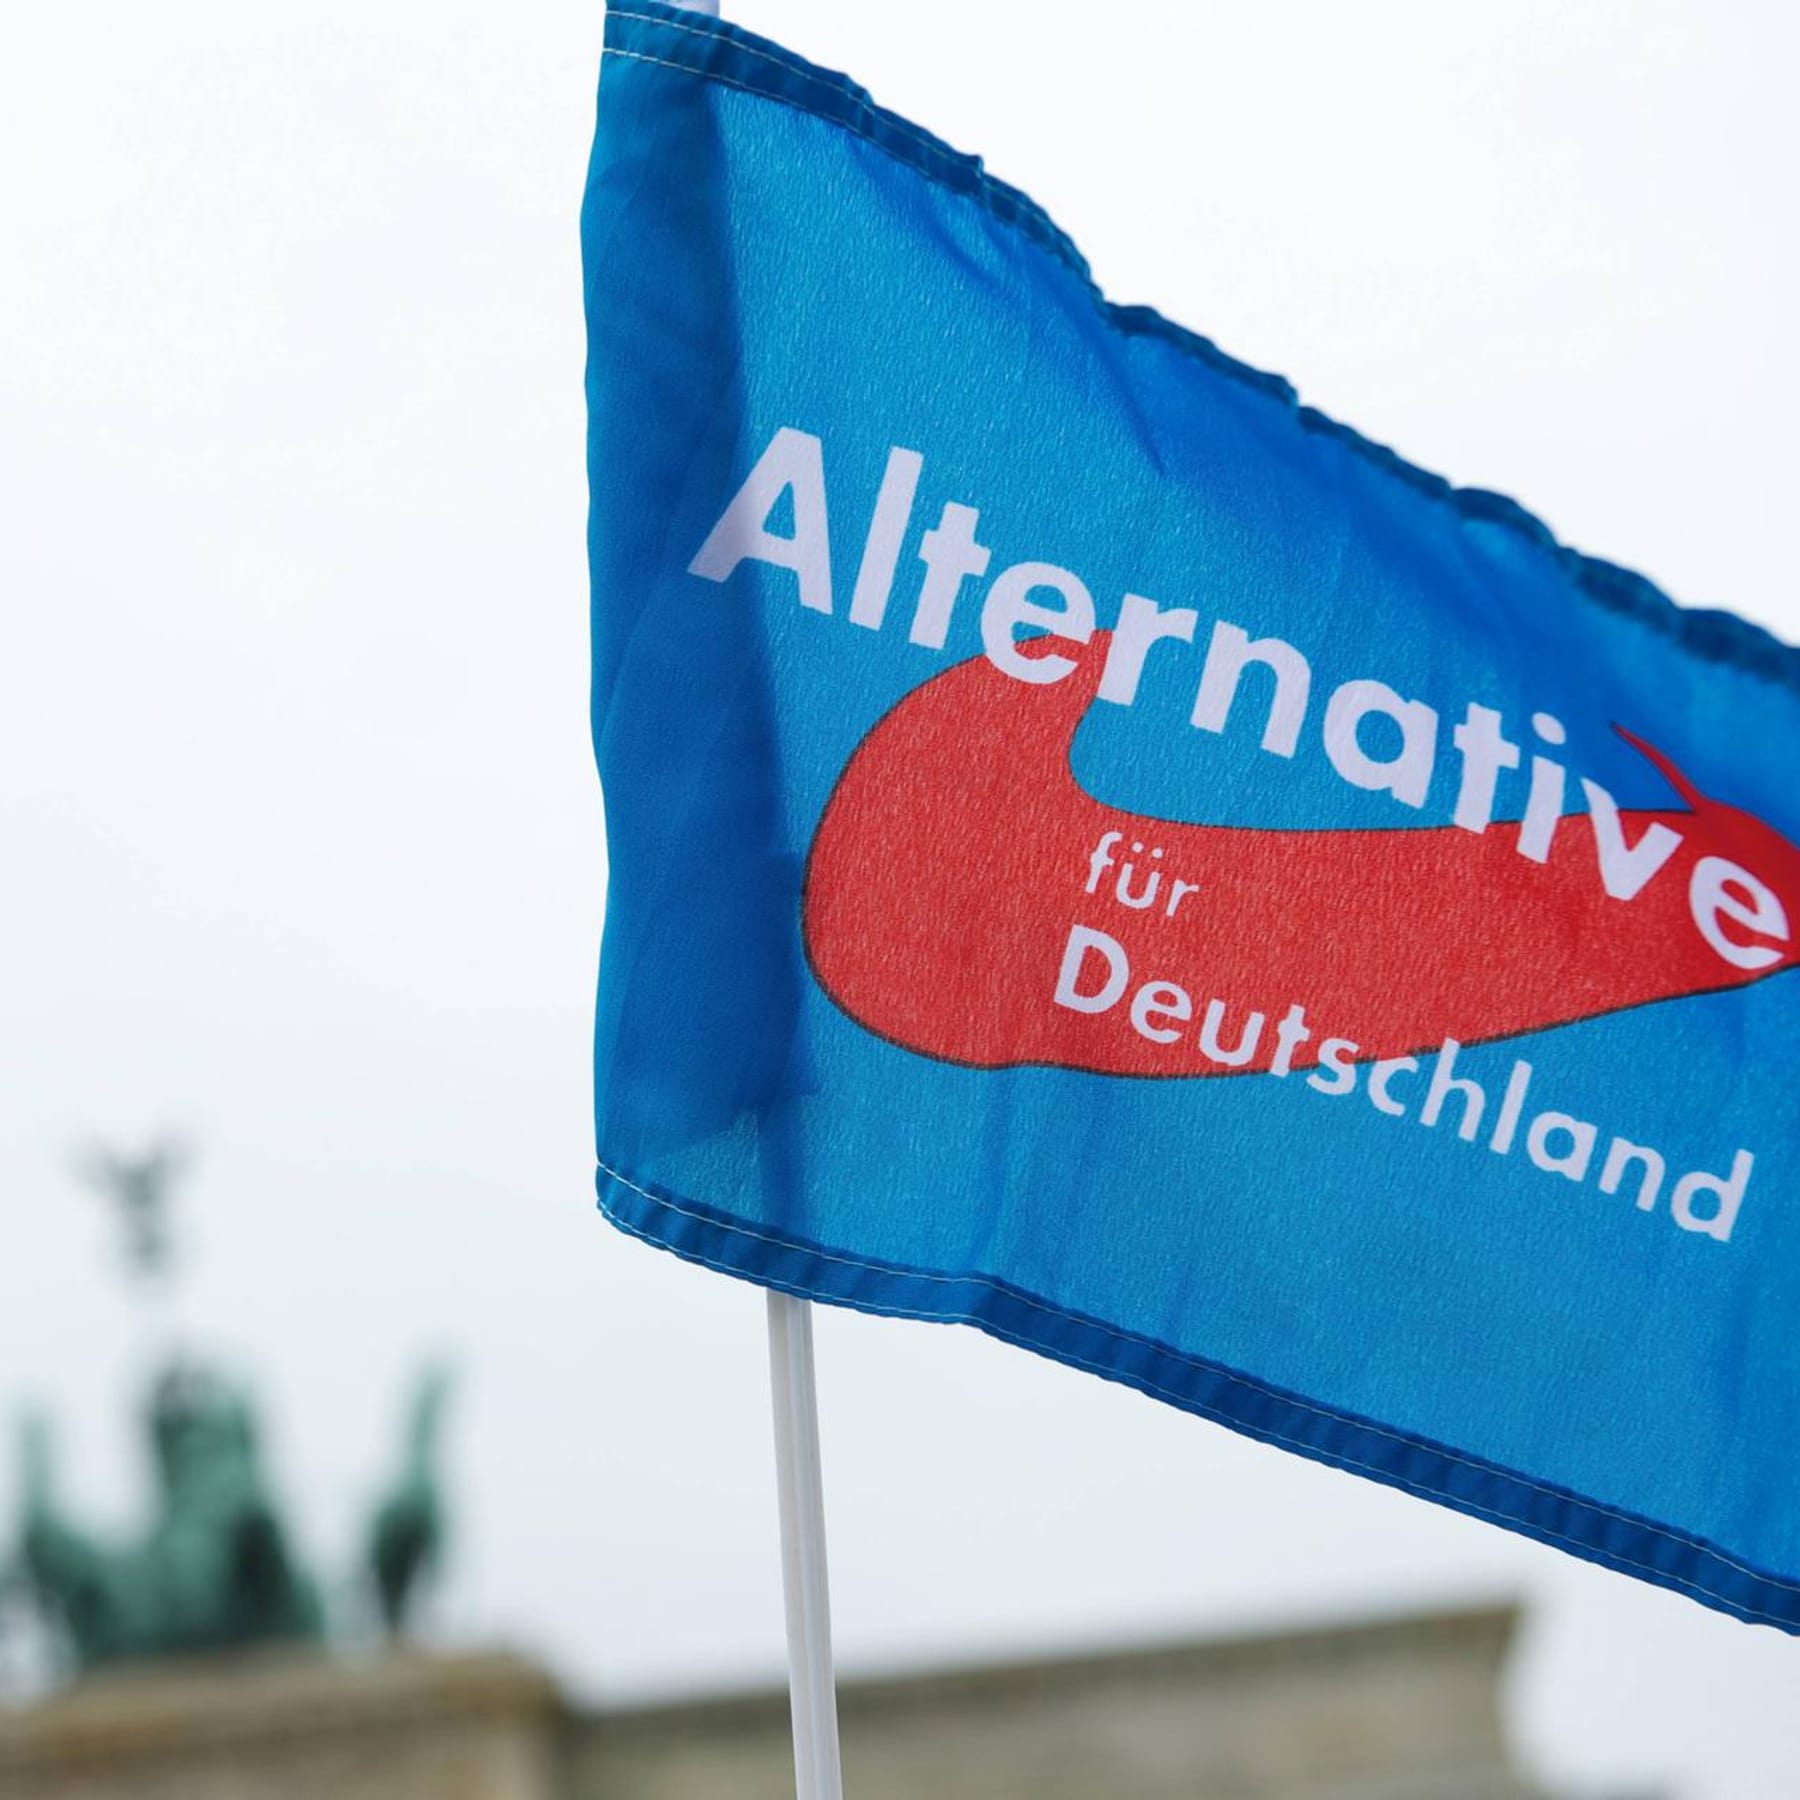 Verfassungsschutz: Berliner Landes-AfD wohl als Verdachtsfall eingestuft